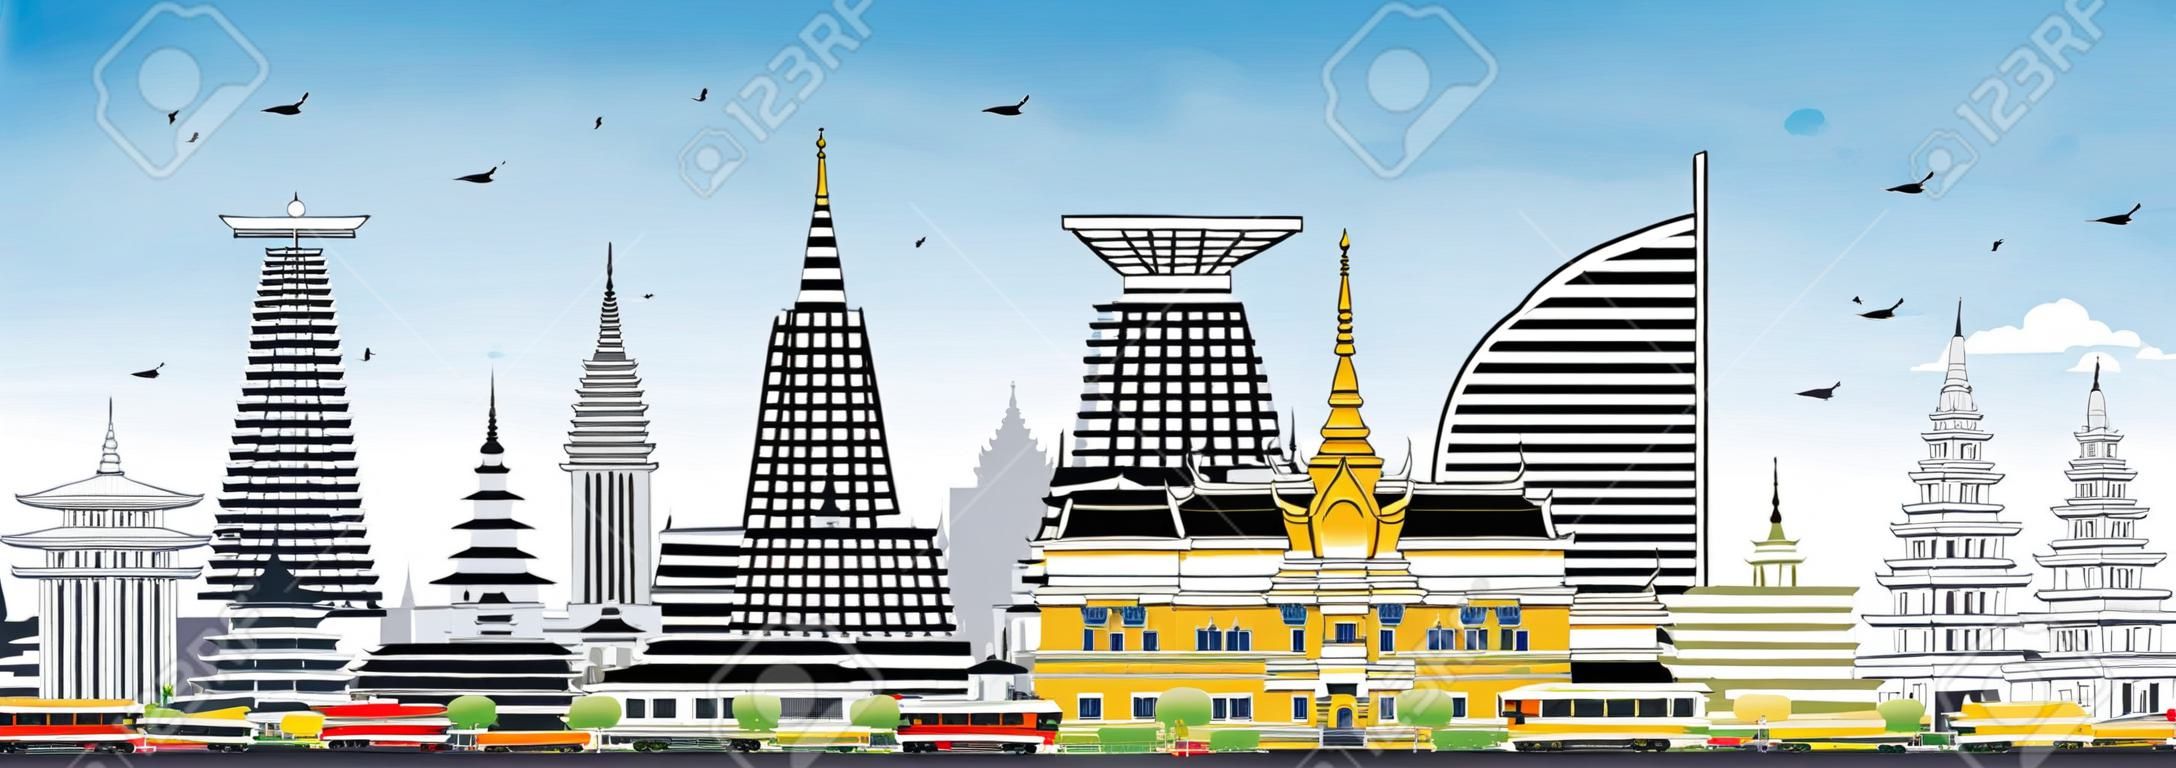 プノンペンカンボジア市スカイラインと色の建物と青空。ベクトル図。歴史的建築を用いてビジネス旅行と観光のコンセプト。ランドマークとプノンペン市街並み。